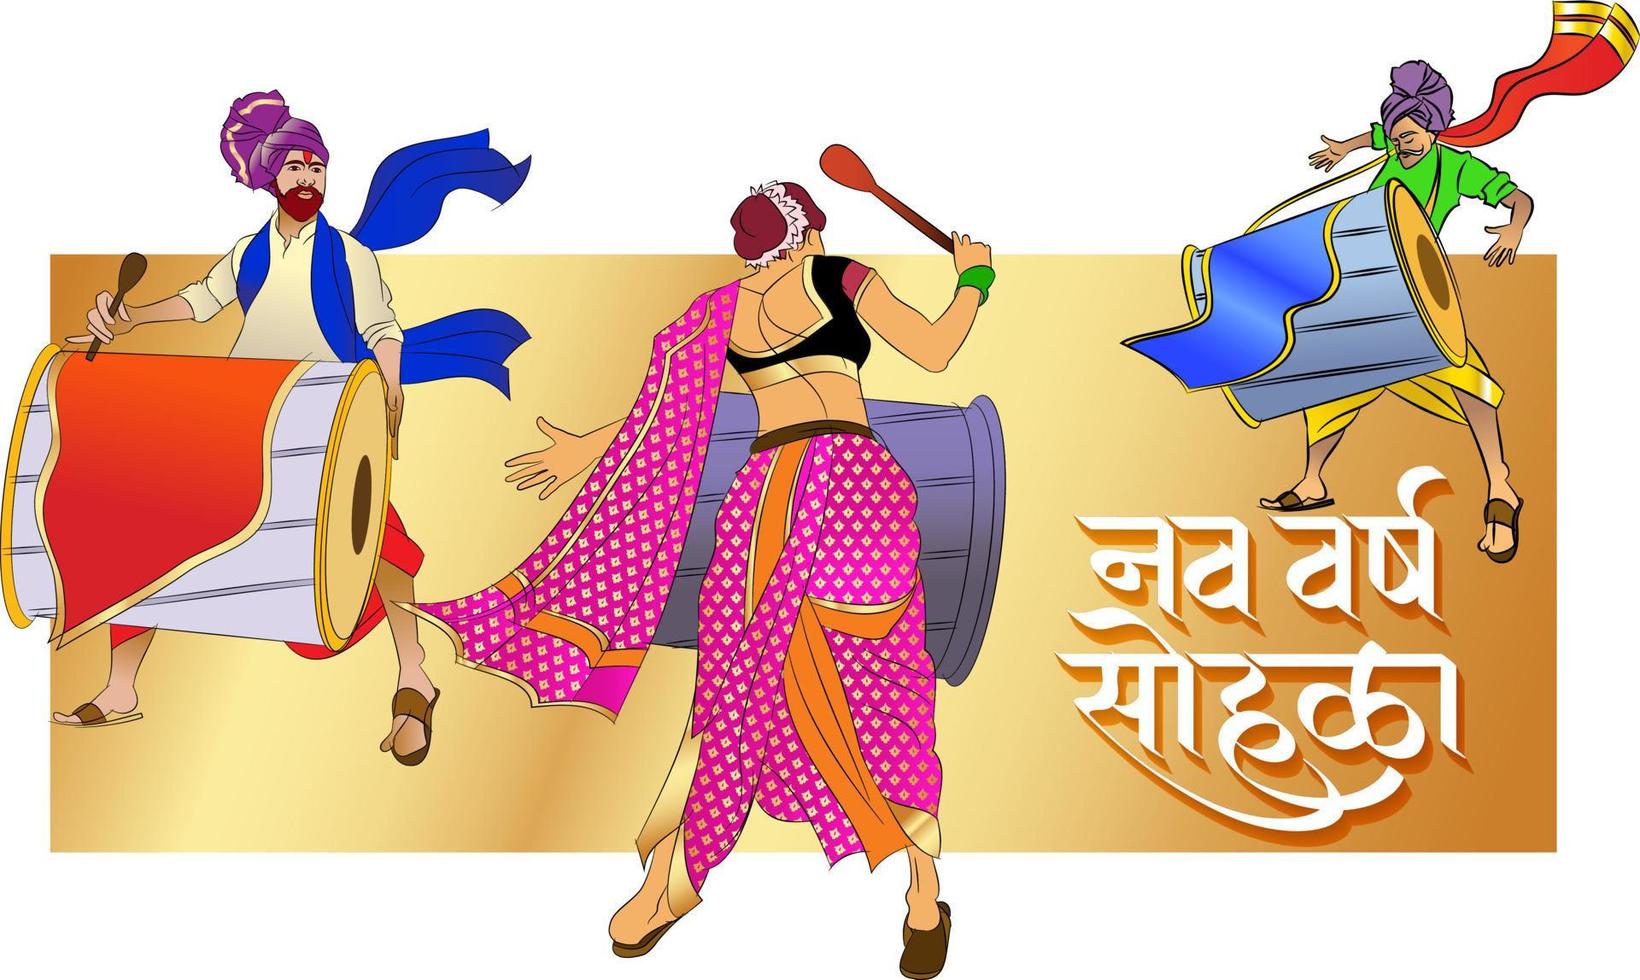 firande av det maharashtrianska nyåret, Indien. skrivet på språket marathi 'gudi padwachya hardik shubhechha' betyder hjärtligaste hälsningar från gudi padwa eller gott nytt år. vektor